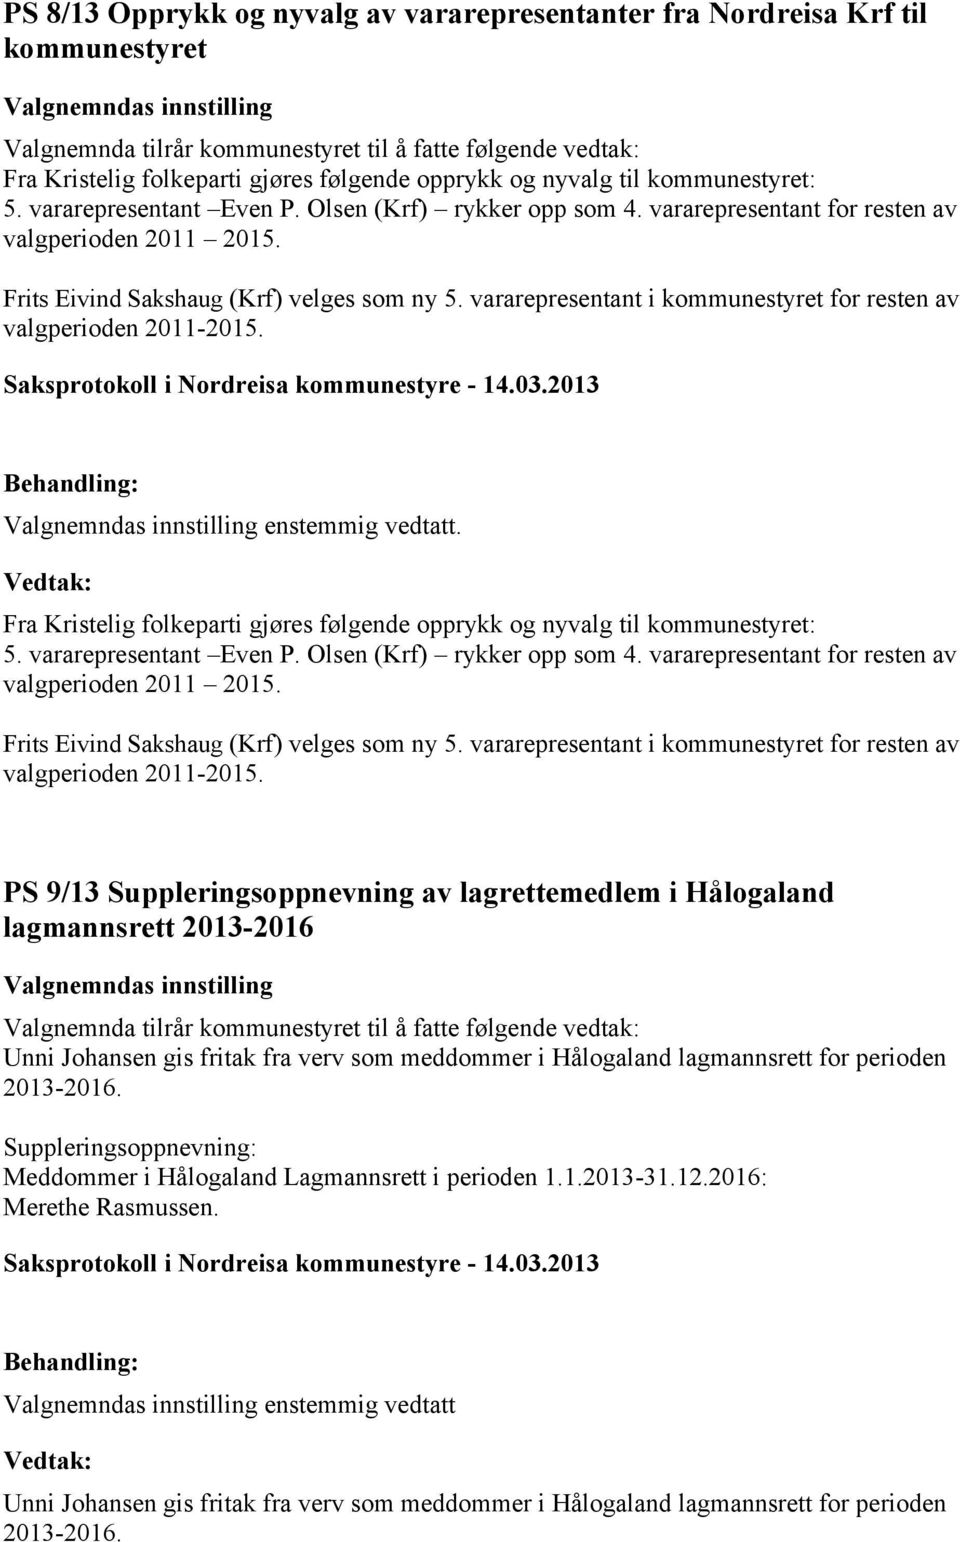 Frits Eivind Sakshaug (Krf) velges som ny 5. vararepresentant i kommunestyret for resten av valgperioden 2011-2015. Valgnemndas innstilling enstemmig vedtatt.